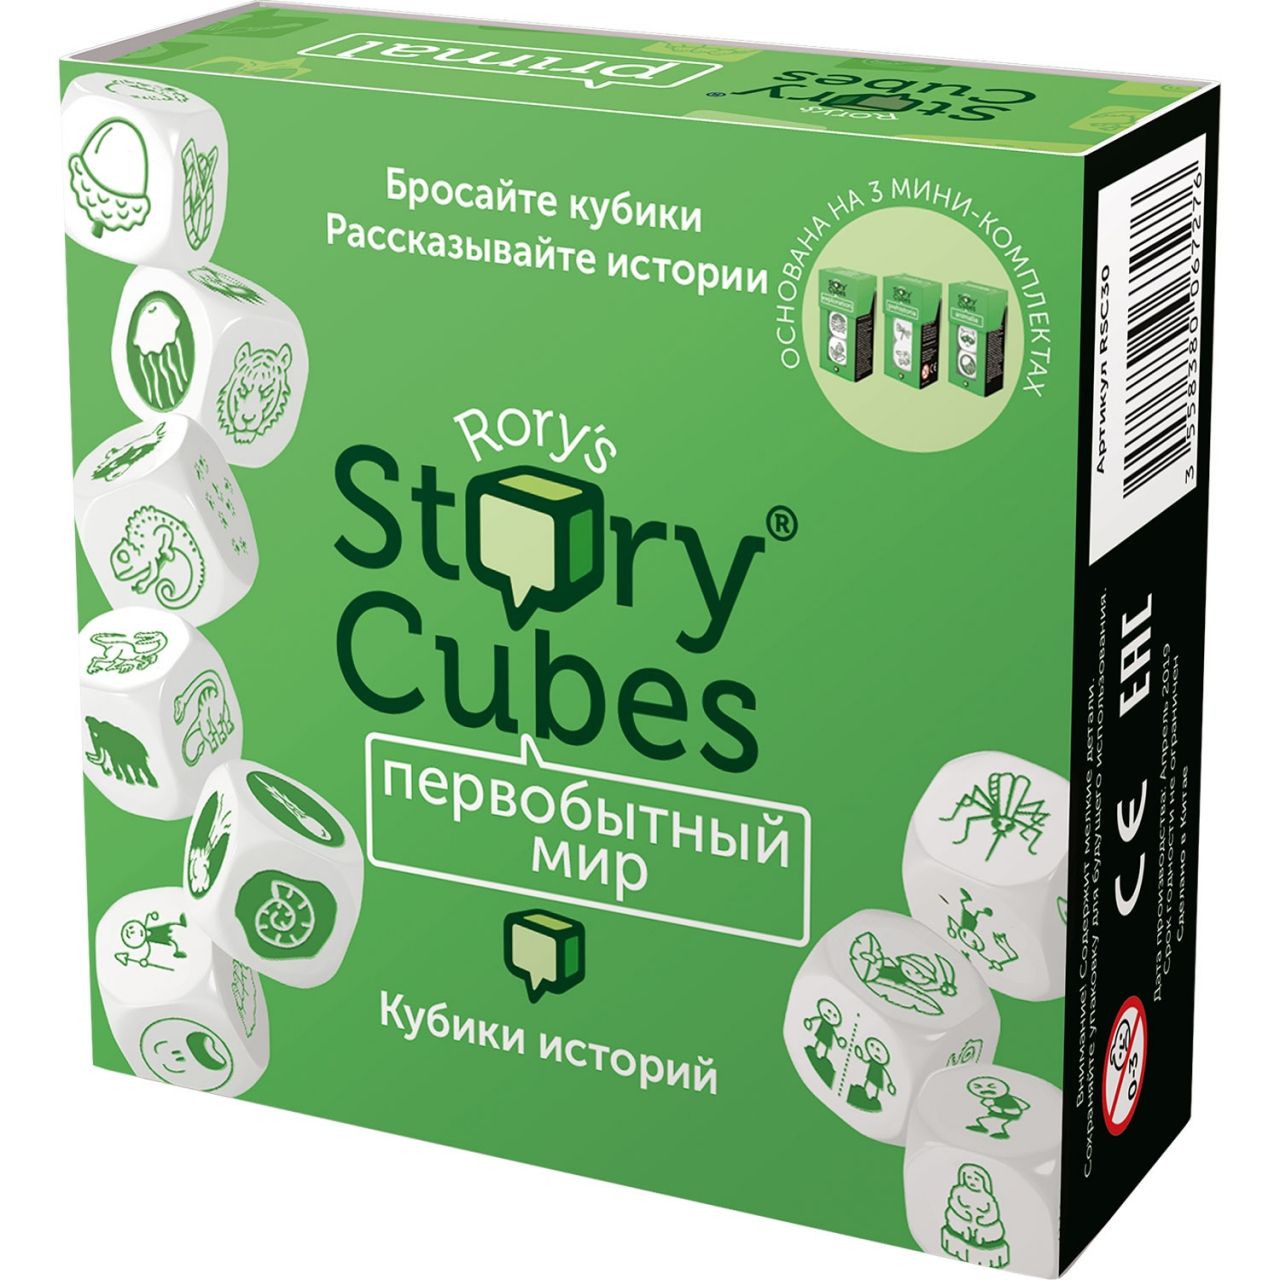 Настольная игра RORYS STORY CUBES RSC30 кубики историй Первобытный мир настольная игра кубики историй